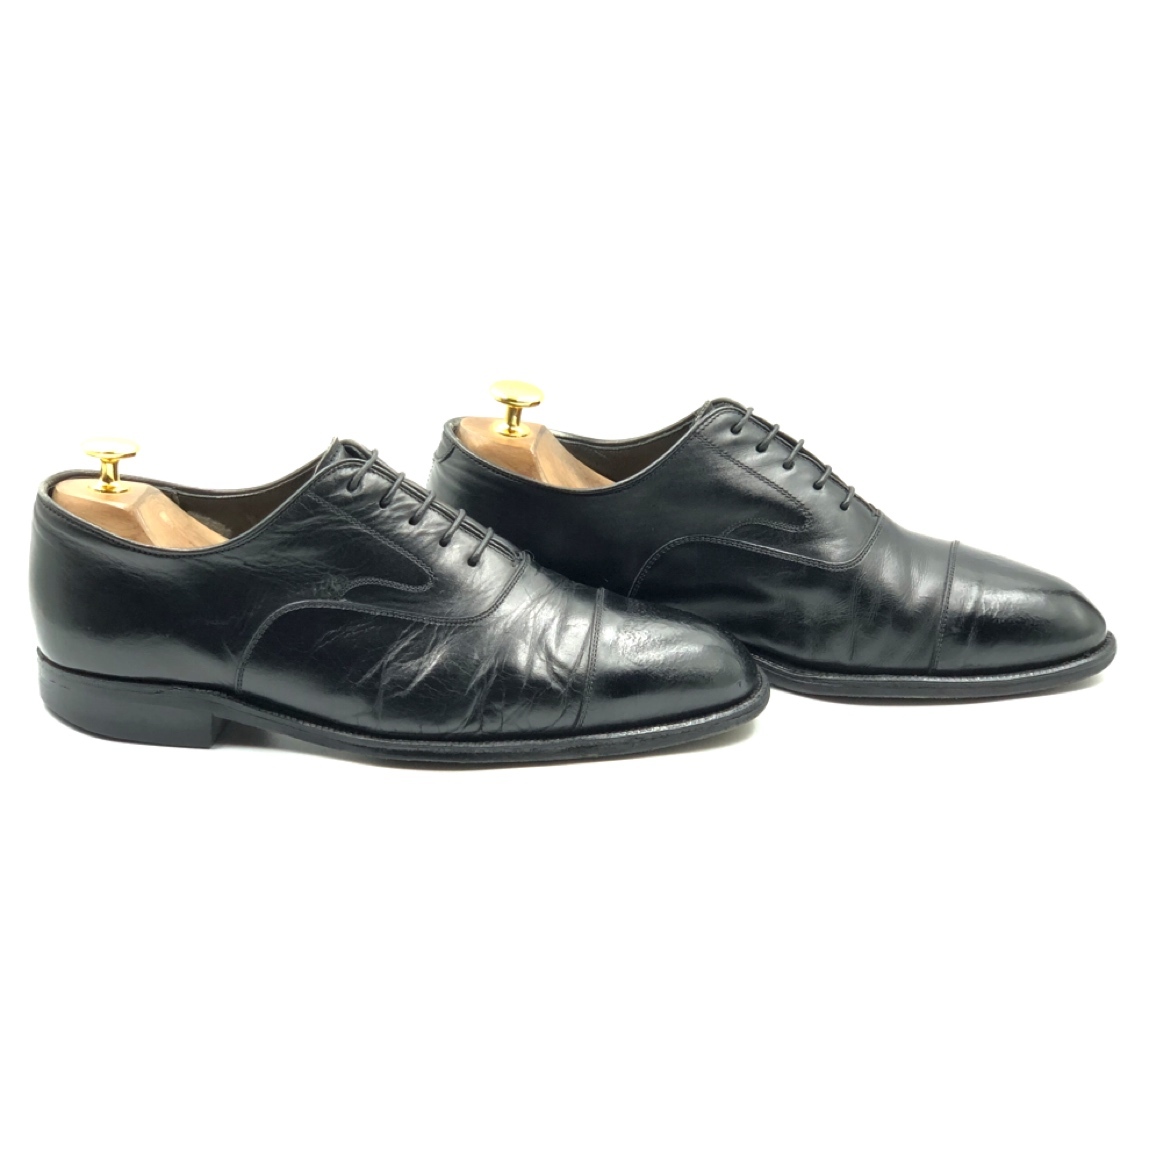 即決 Johnston&Murphy ジョンストン&マーフィー 25.5cm 7.5 メンズ レザーシューズ ストレートチップ 黒 ブラック 革靴 皮靴 ビジネス